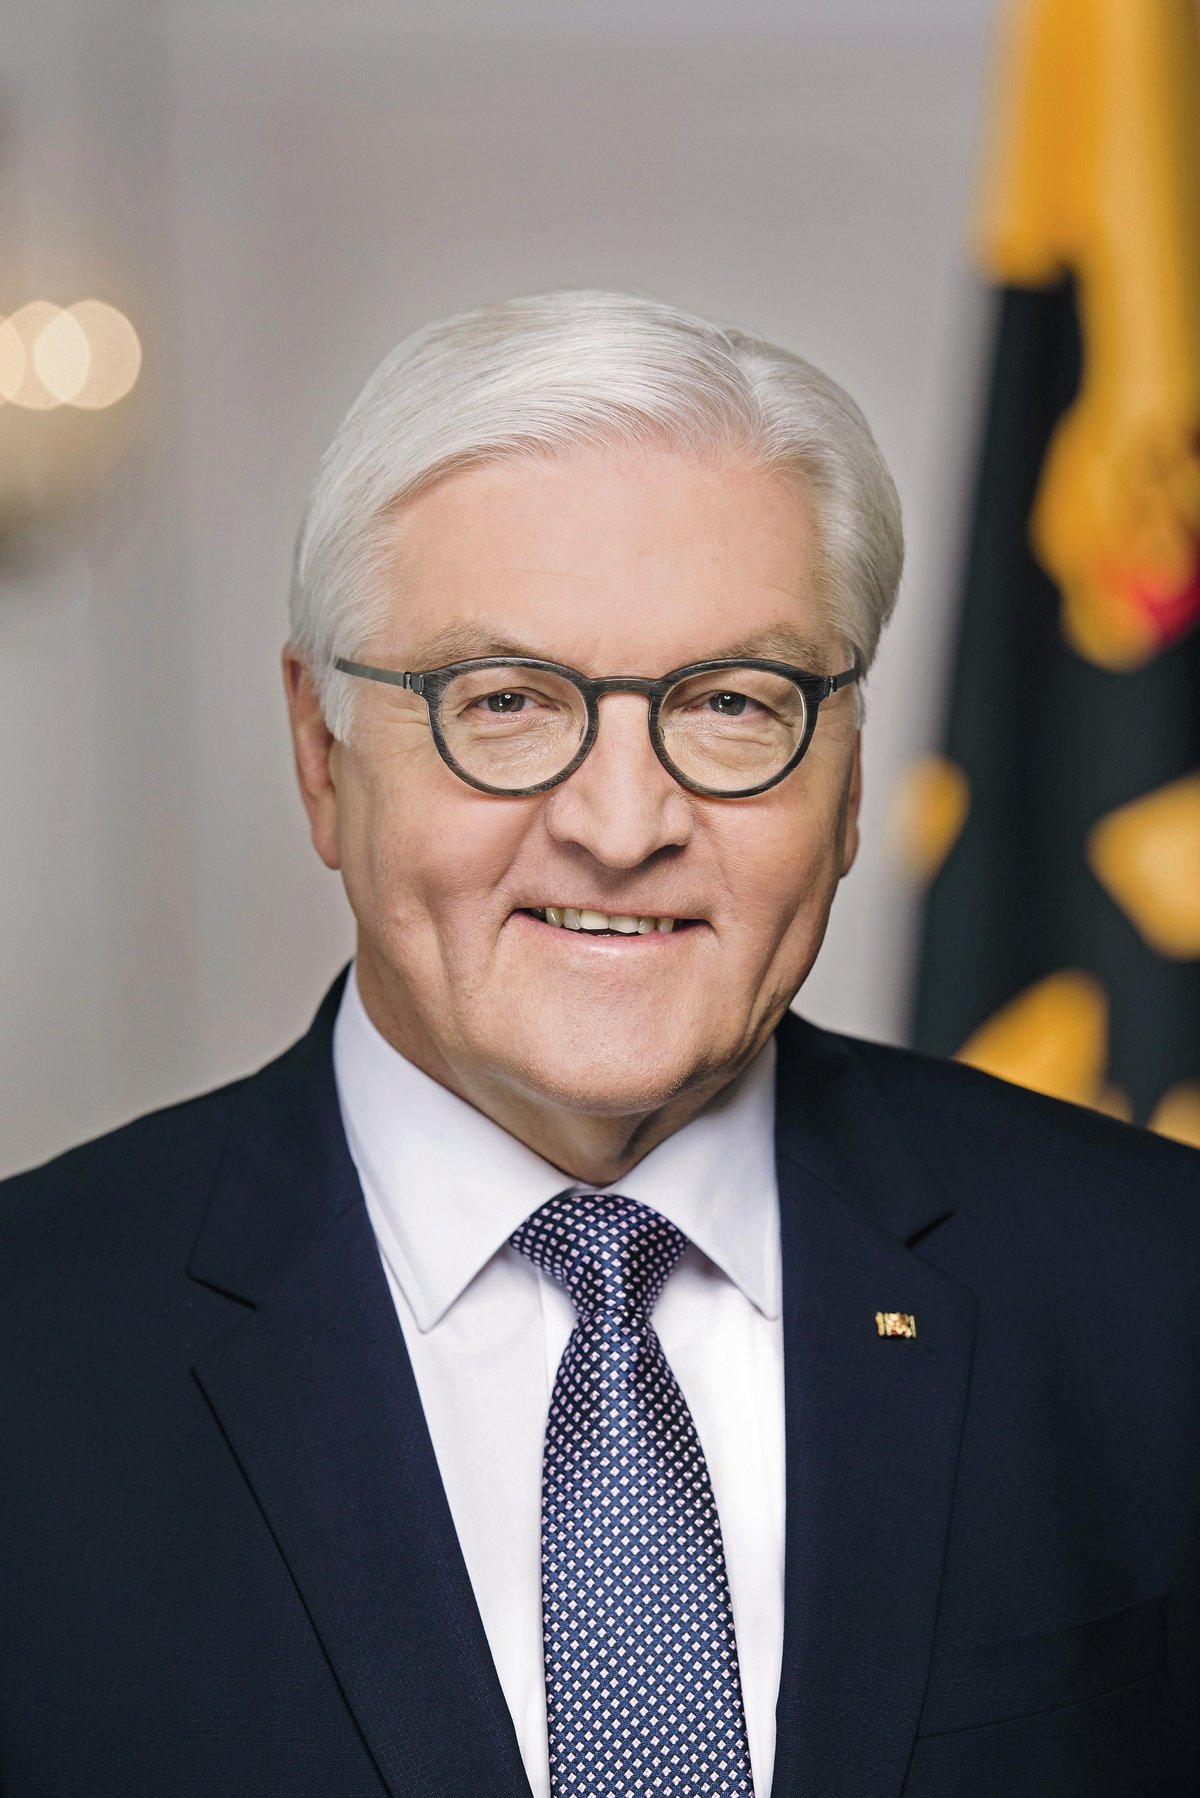 Porträtfoto des Bundespräsidenten Frank-Walter Steinmeier. Copyright: Bundesregierung/Steffen Kugler